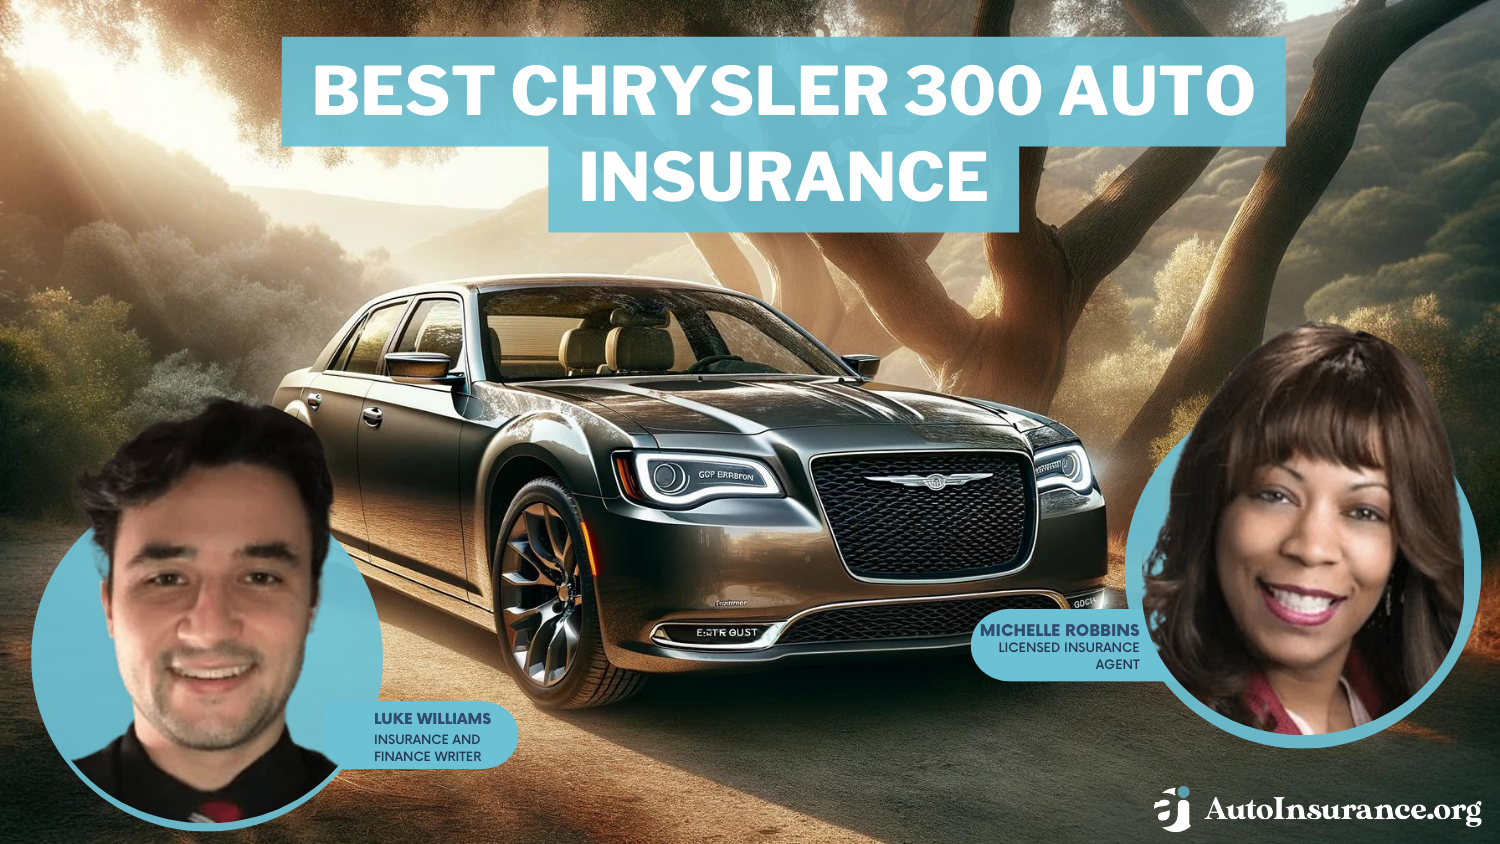 Best Chrysler 300 Auto Insurance: Progressive, Allstate, Farmers